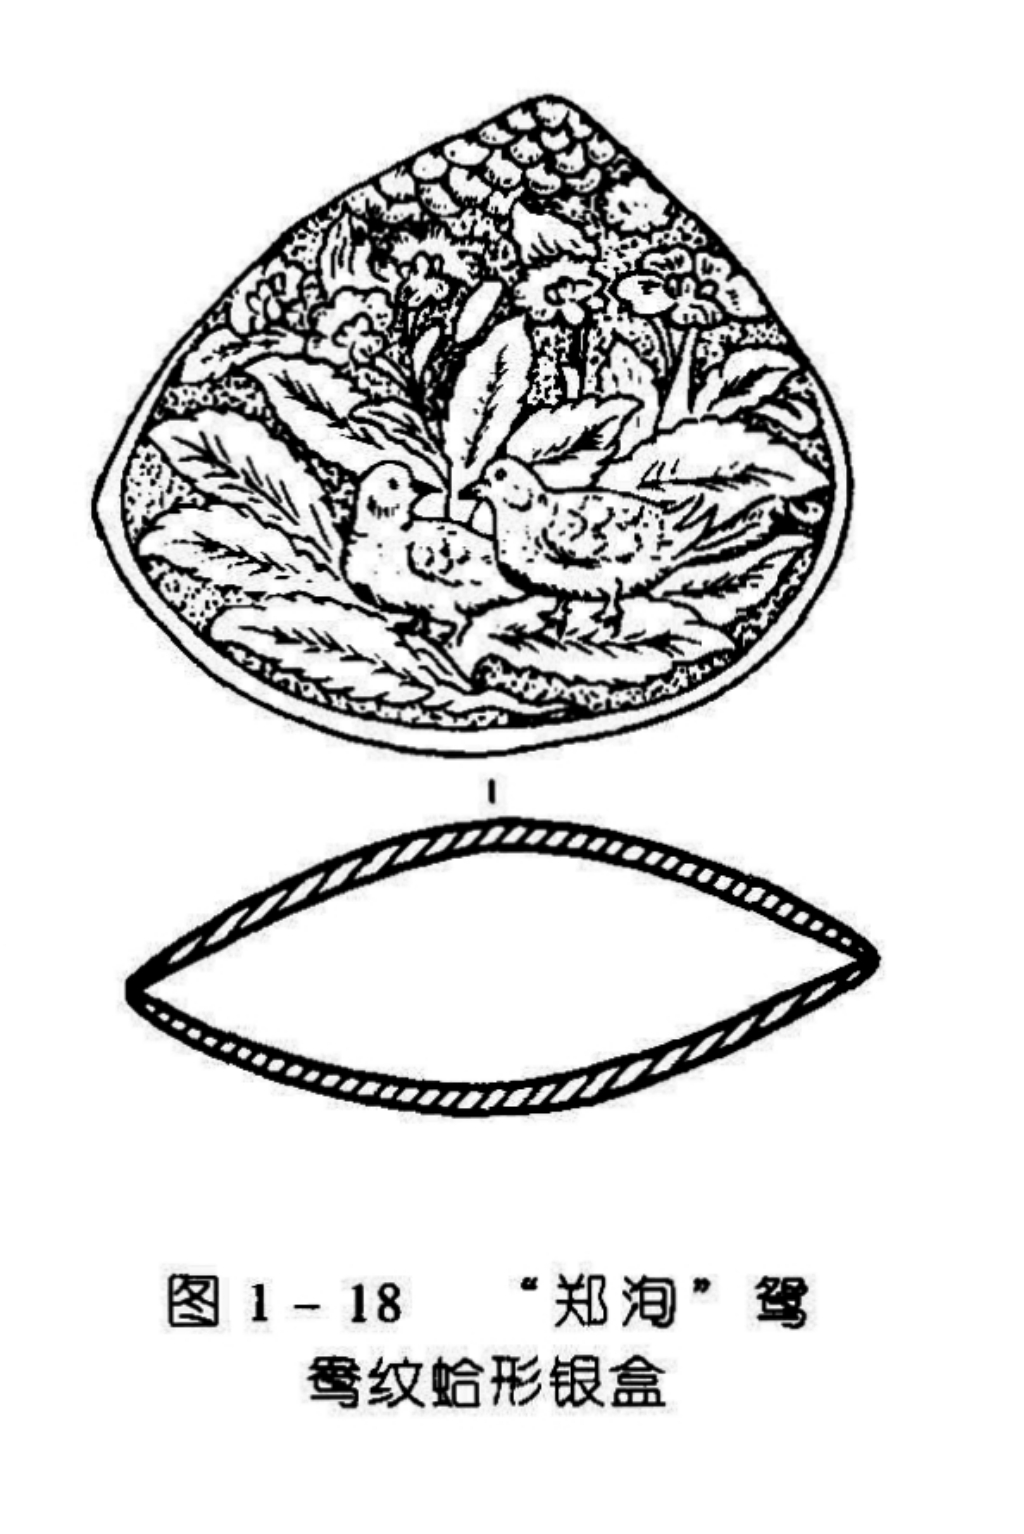 图 1 - 18 “郑海”鸳鸯纹蛤形银盒